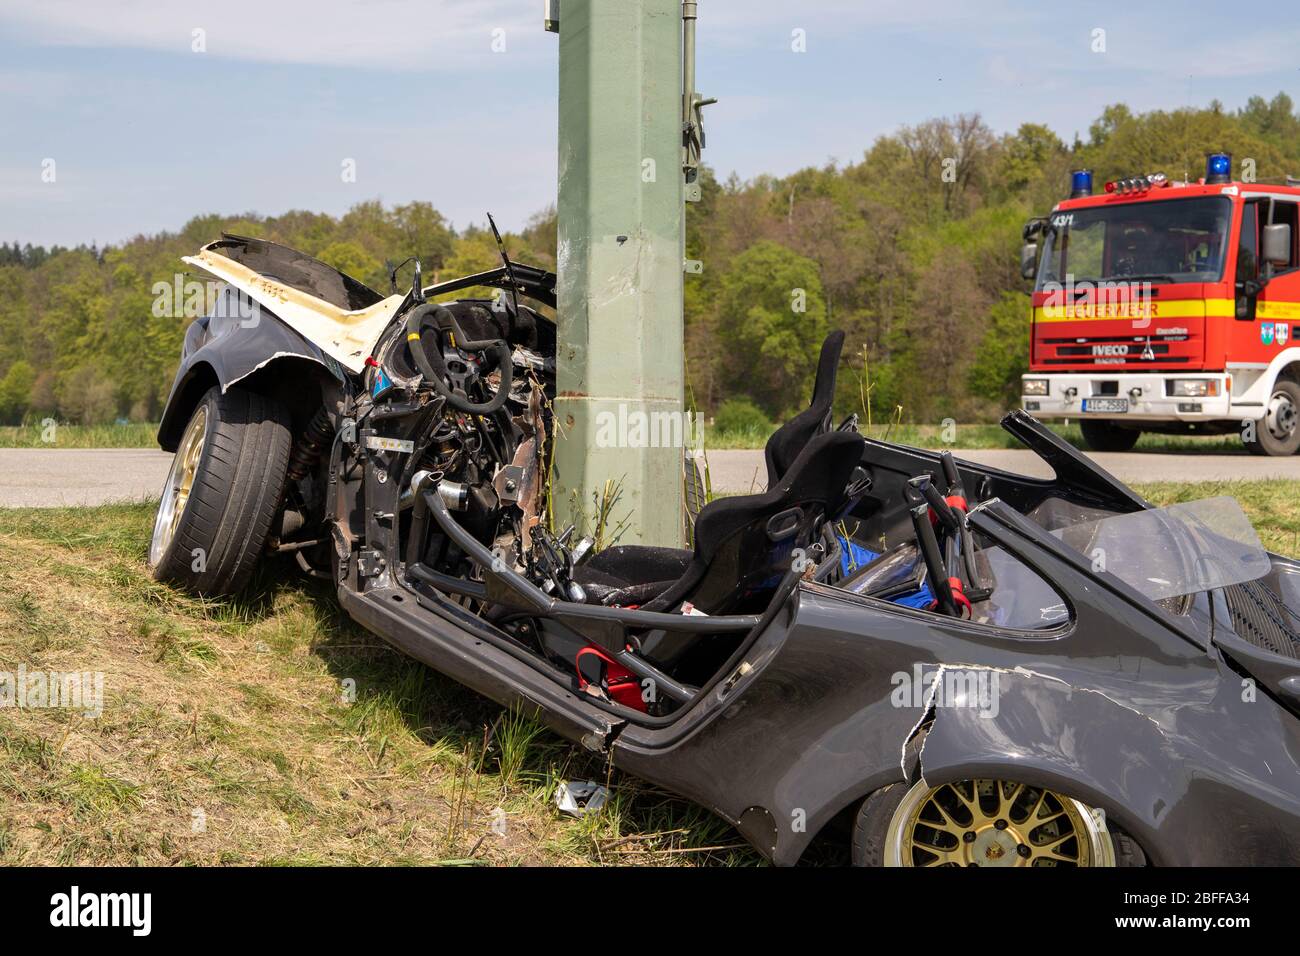 Derching, Allemagne. 18 avril 2020. Un pôle d'alimentation s'accroche à une Porsche après que celle-ci ait quitté la route dans un virage à droite et s'est écrasé dans le poteau. La voiture avait probablement été conduite à vitesse plus élevée le samedi après-midi, il a été signalé. Le conducteur de 46 ans est décédé à l'hôpital après l'accident, selon la police, le passager de 45 ans est en danger mortel. Crédit: Schmelzer/vifogra/dpa/Alay Live News Banque D'Images